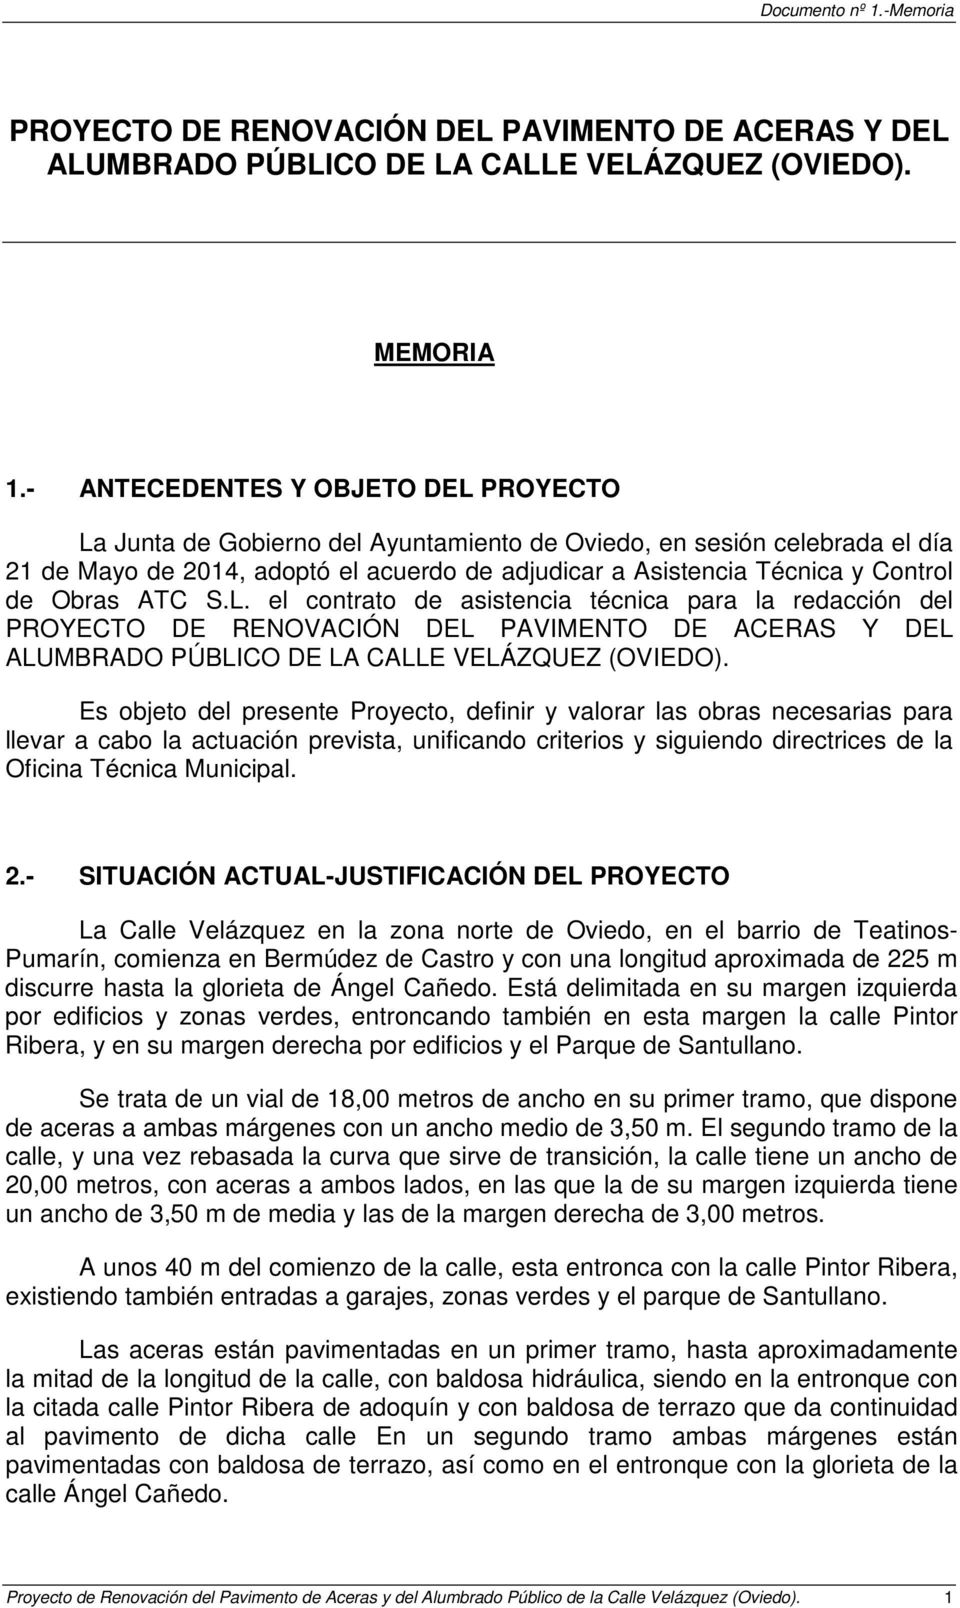 Obras ATC S.L. el contrato de asistencia técnica para la redacción del PROYECTO DE RENOVACIÓN DEL PAVIMENTO DE ACERAS Y DEL ALUMBRADO PÚBLICO DE LA CALLE VELÁZQUEZ (OVIEDO).